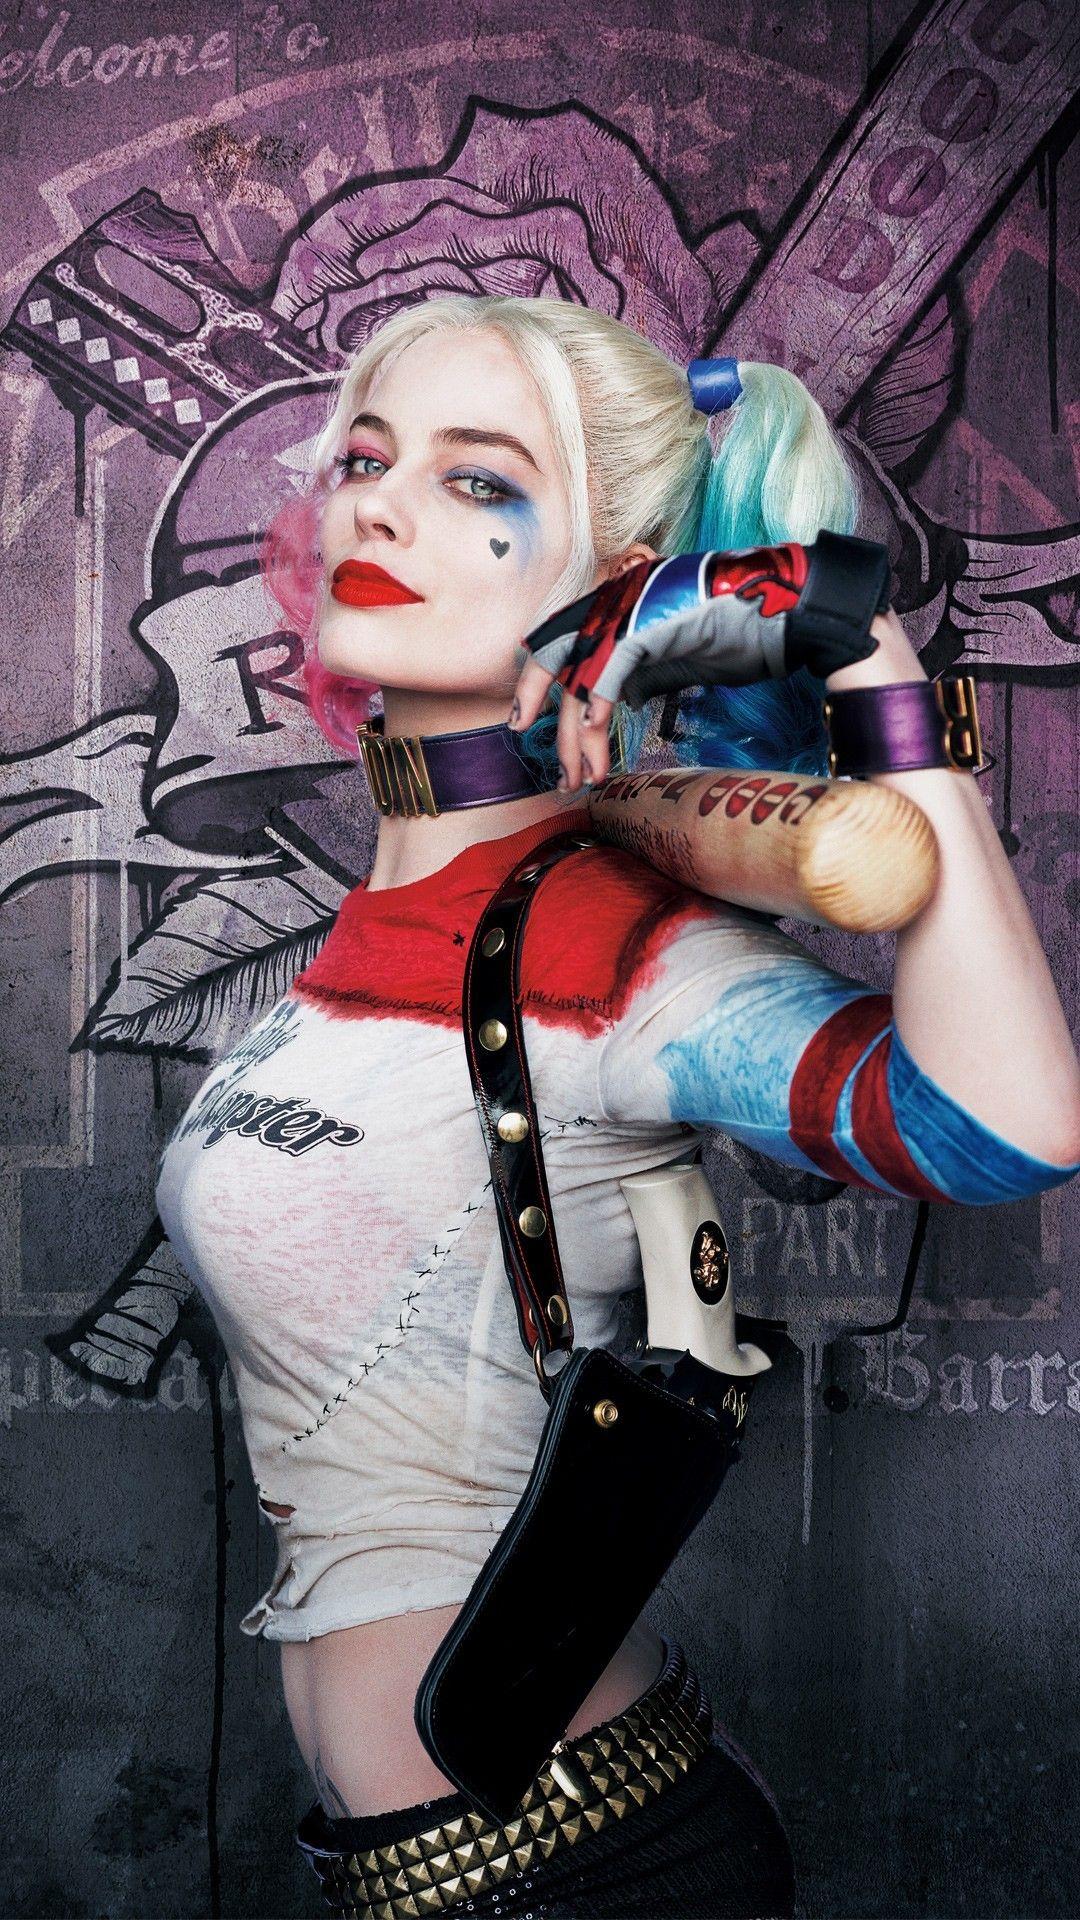 40 Gambar Joker and Harley Quinn Hd Wallpapers for Mobile terbaru 2020